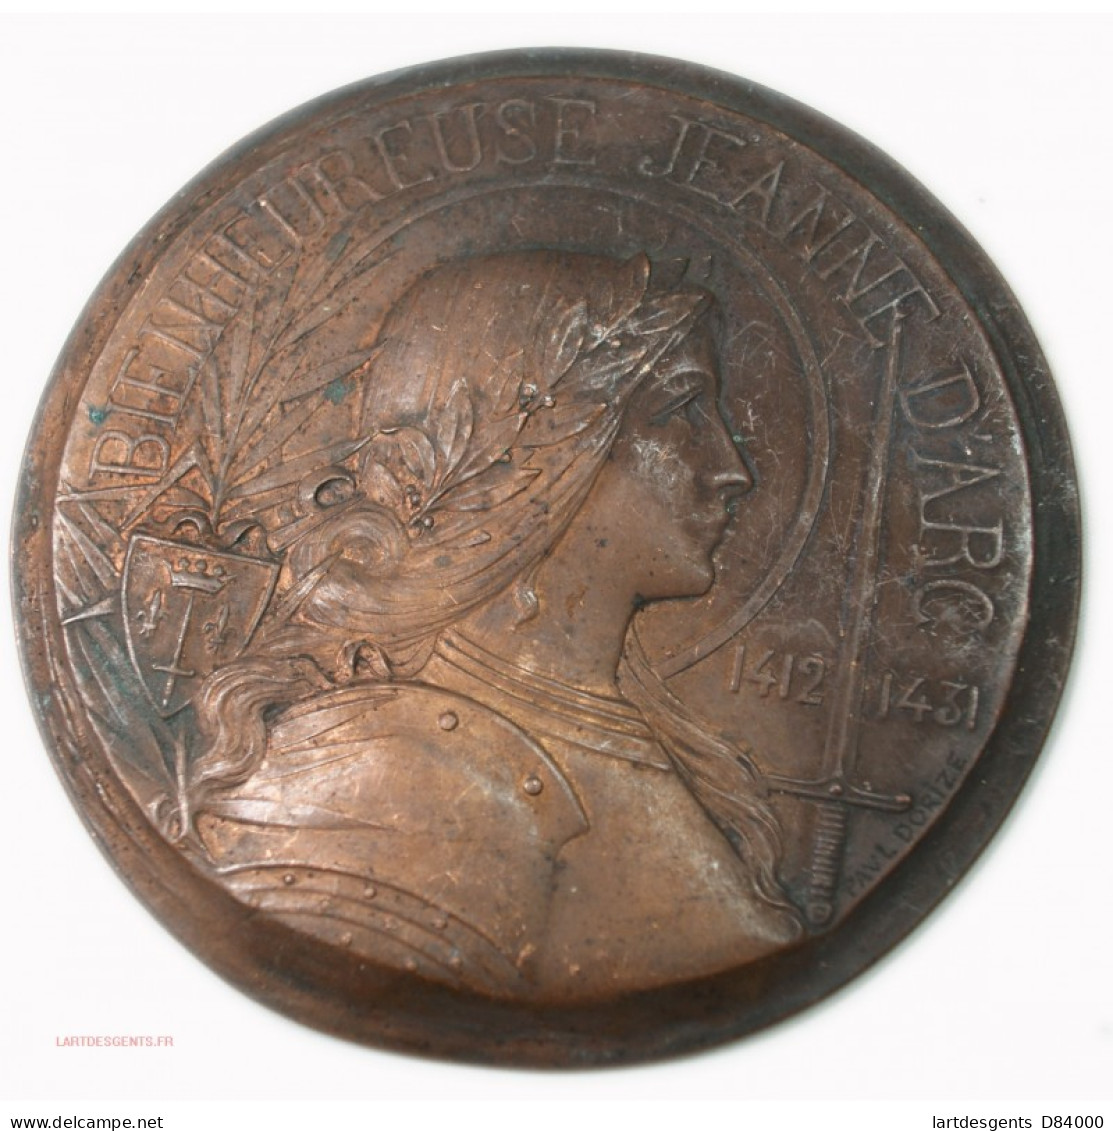 Rare Médaille Uniface Bienheureuse Jeanne D'Arc 1412-1431 Par Paul DORIZE - Royaux / De Noblesse